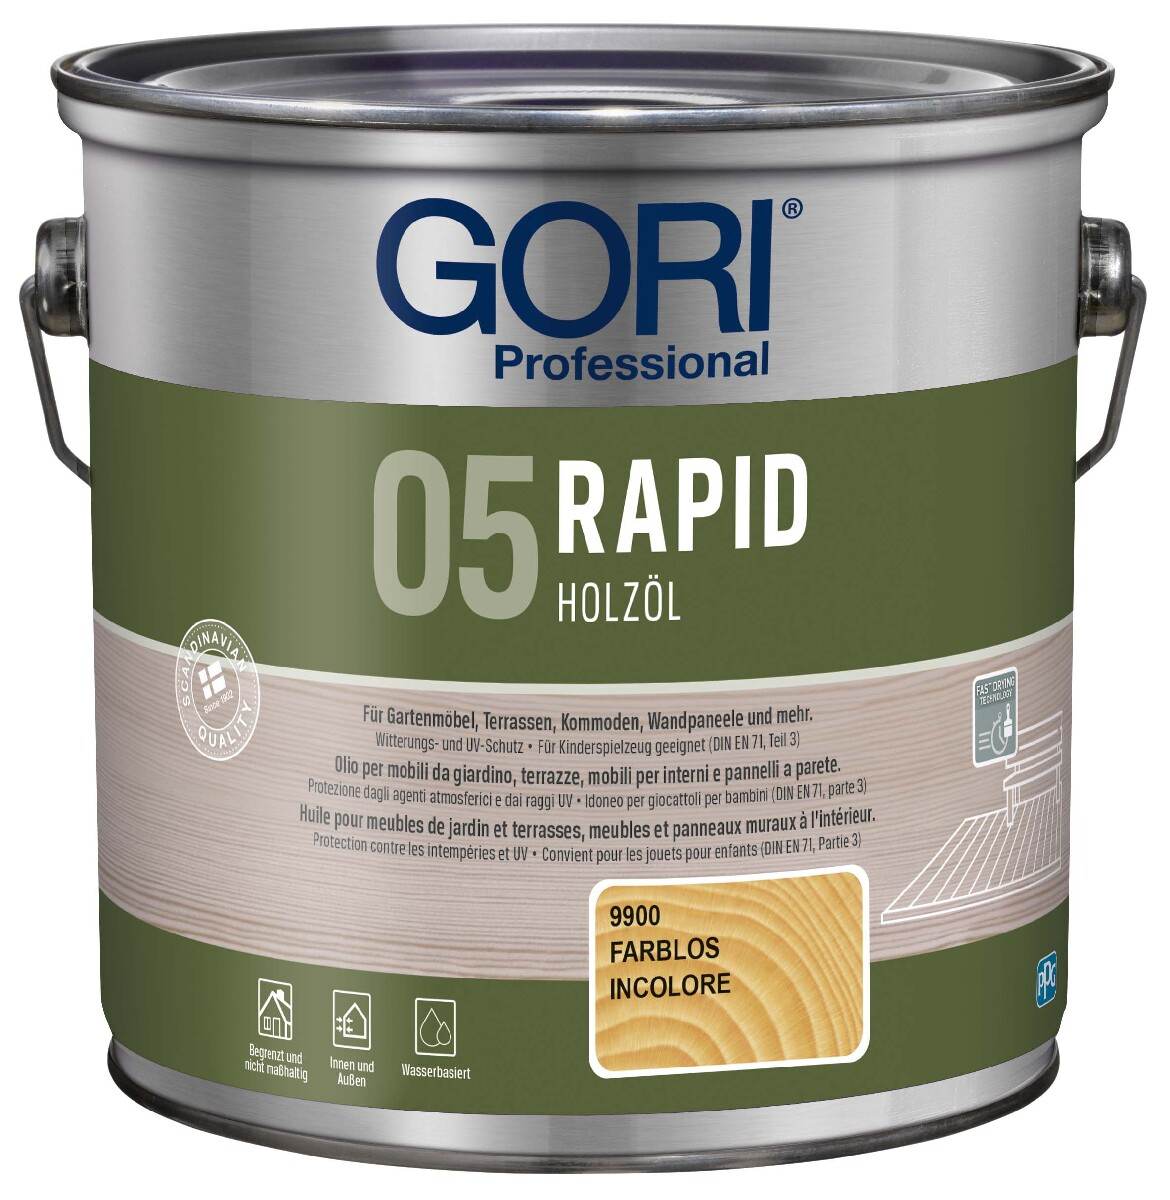 GORI 05 RAPID Holzöl 2,5 L in Farblos, Terrassenöl für Innen & Außen mit Witterungs- und UV-Schutz